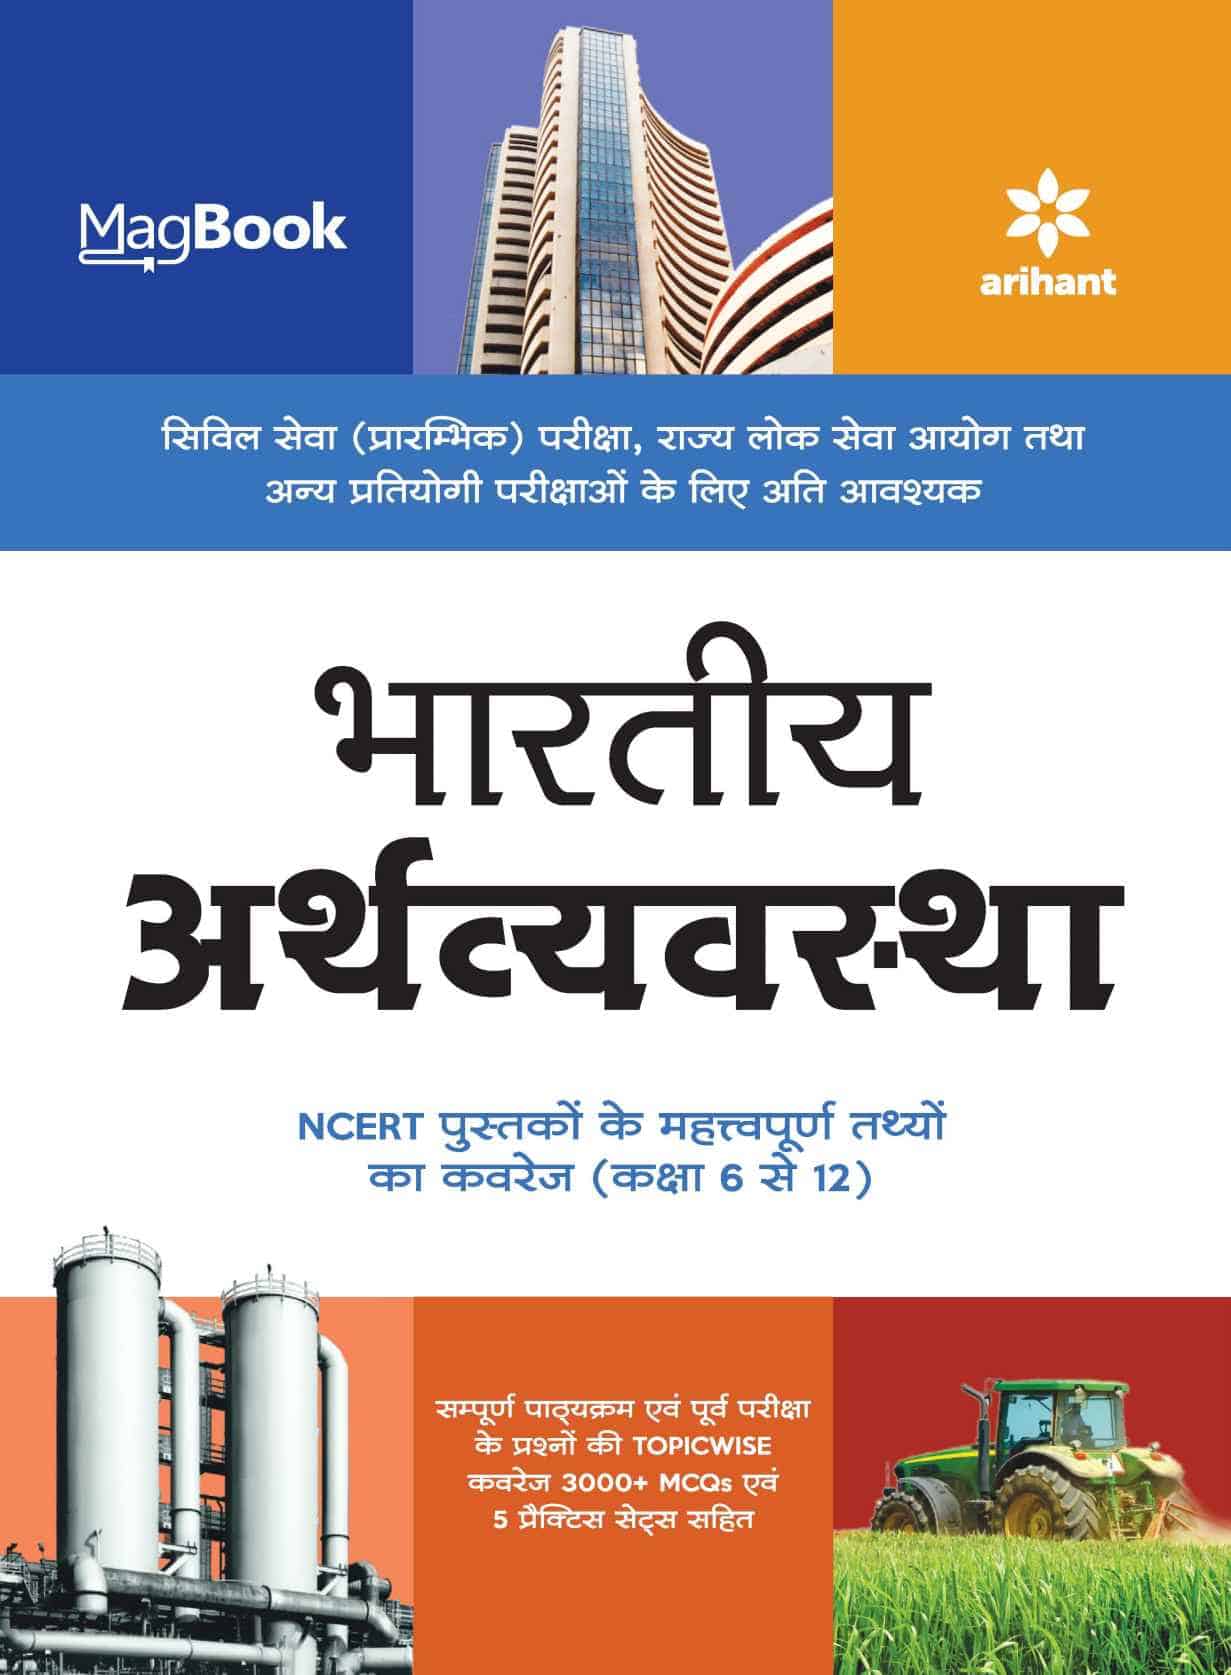 Arihant MagBook Indian Economy PDF [Hindi Edition]